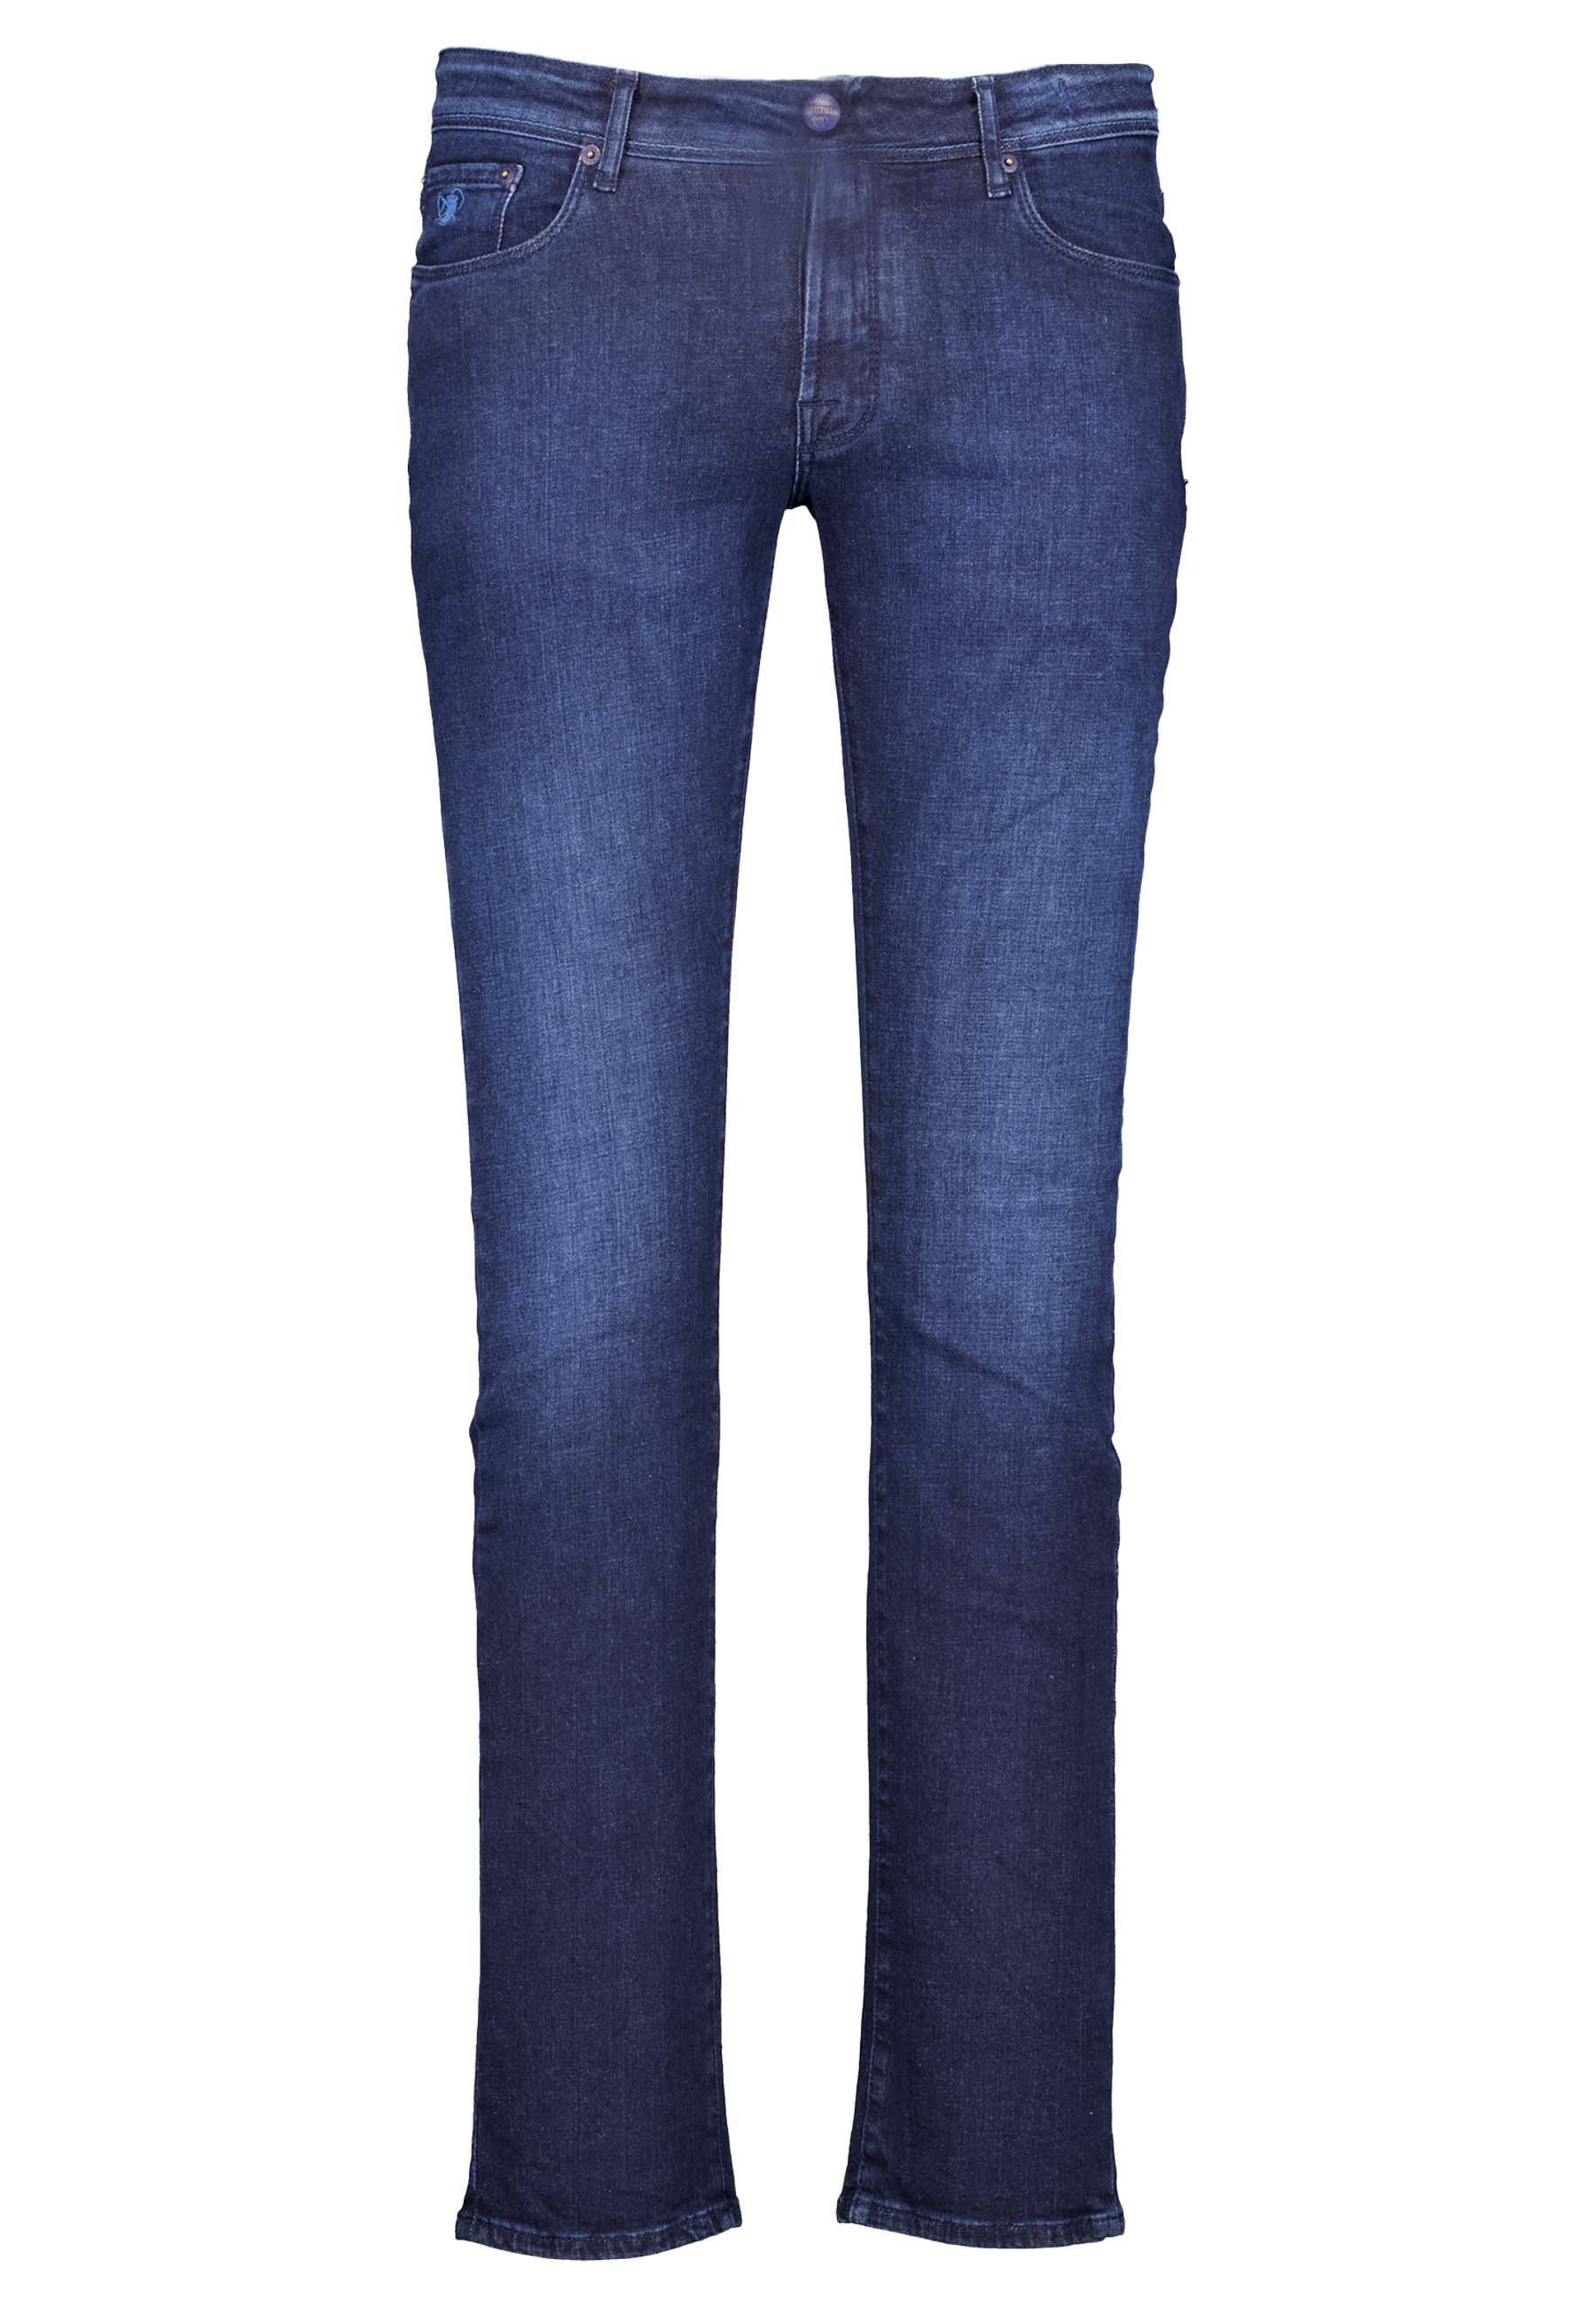 Noterman jeans blauw Heren maat 35/34